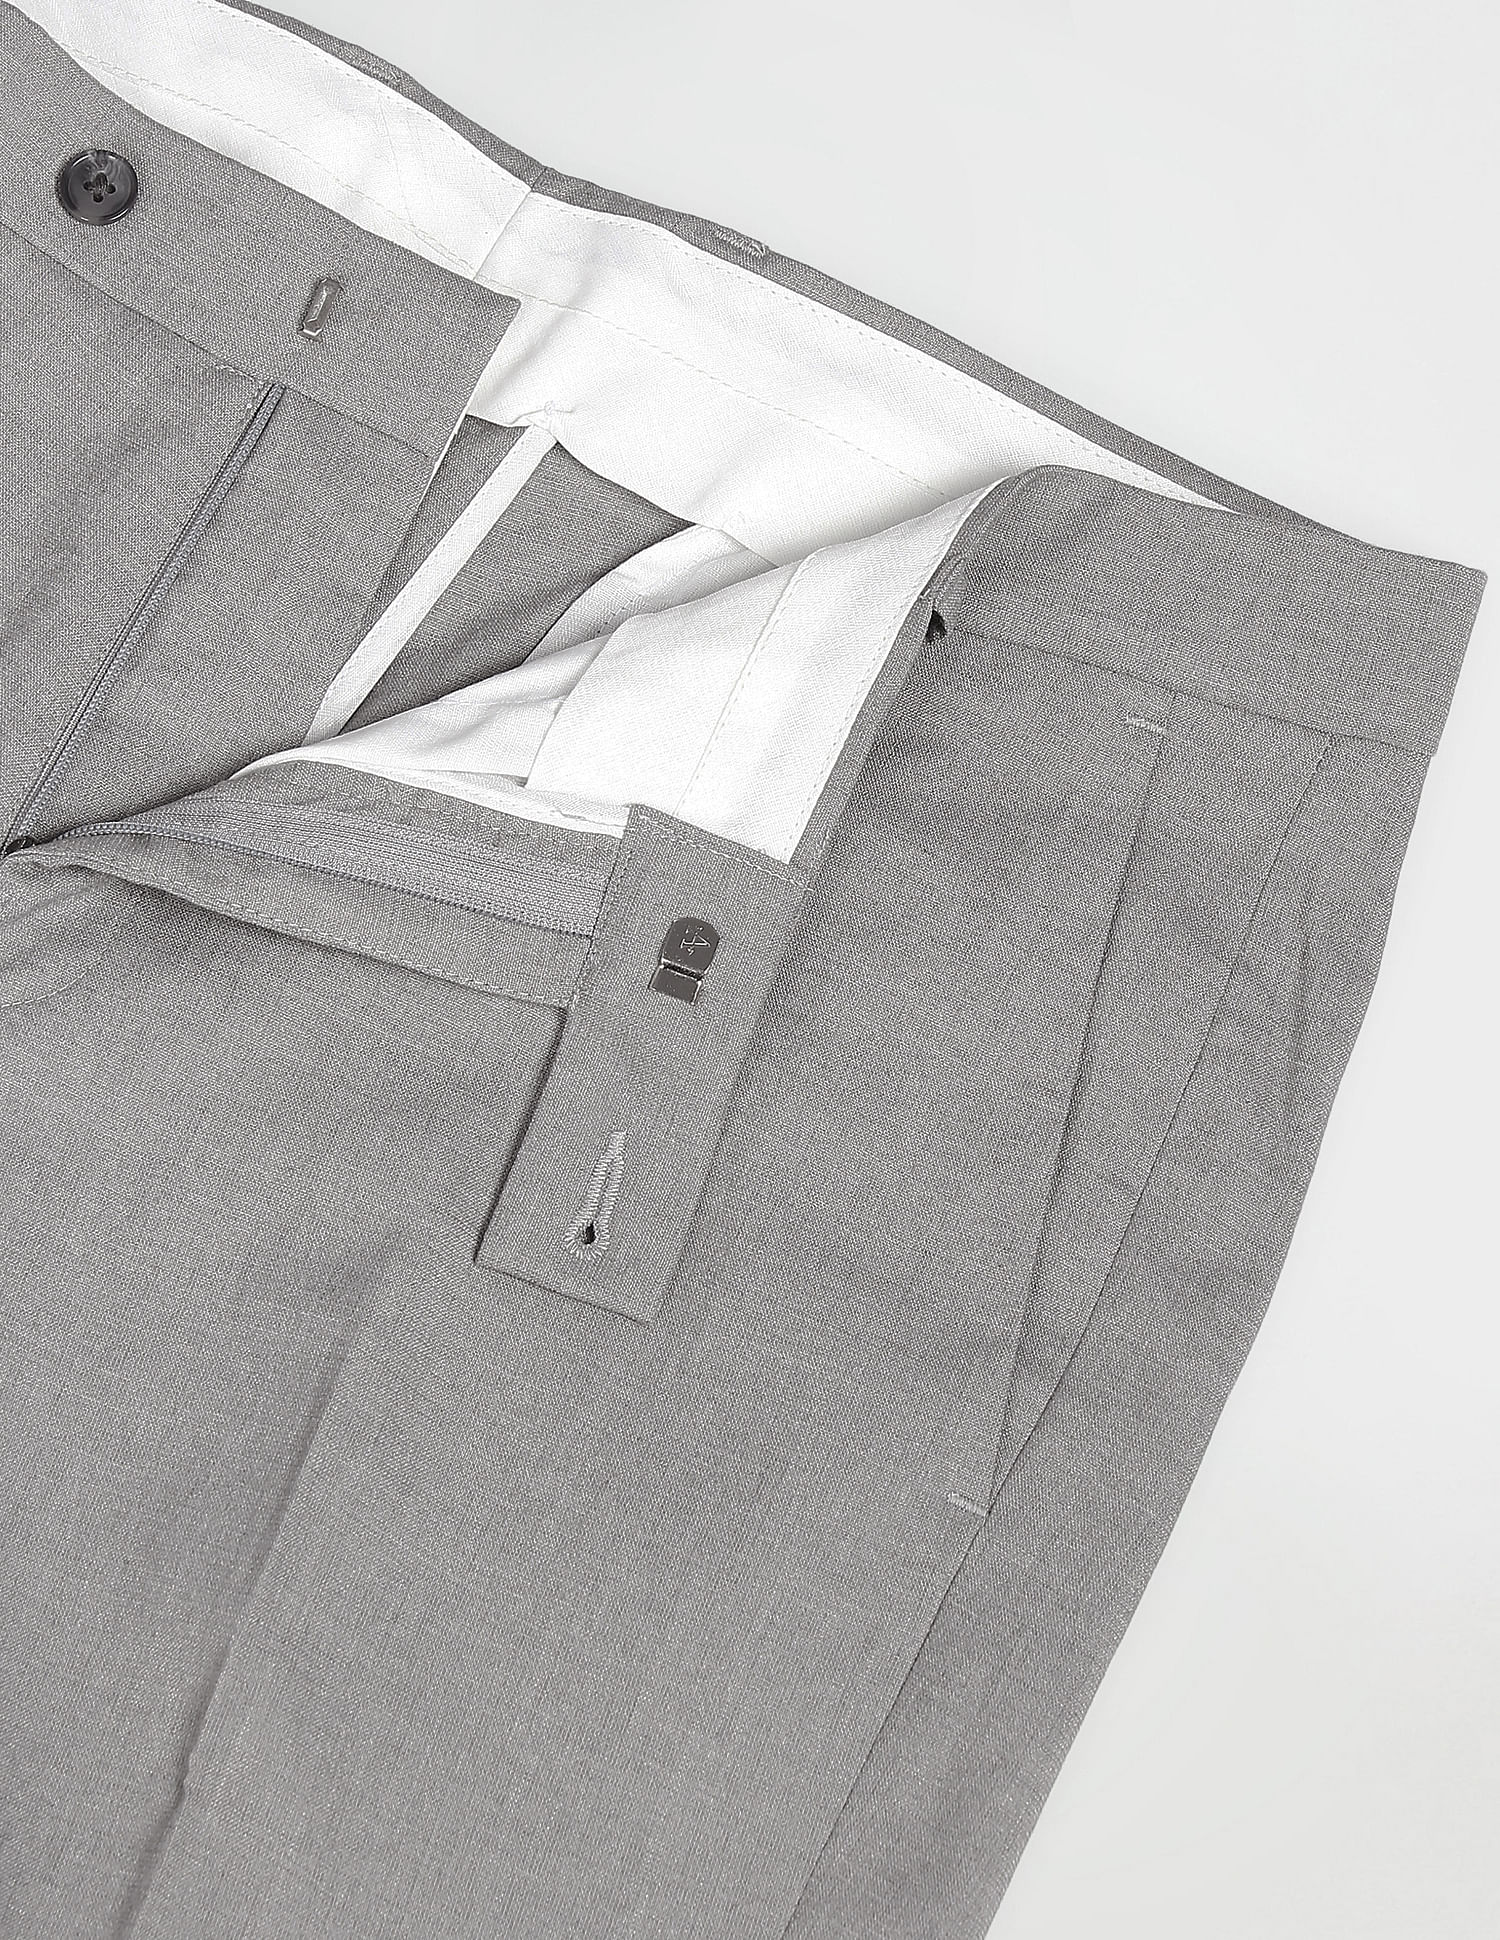 J.M. Haggar - light Grey slim Fit Super Flex Premium dress pants - 38W 30L  NEW | eBay